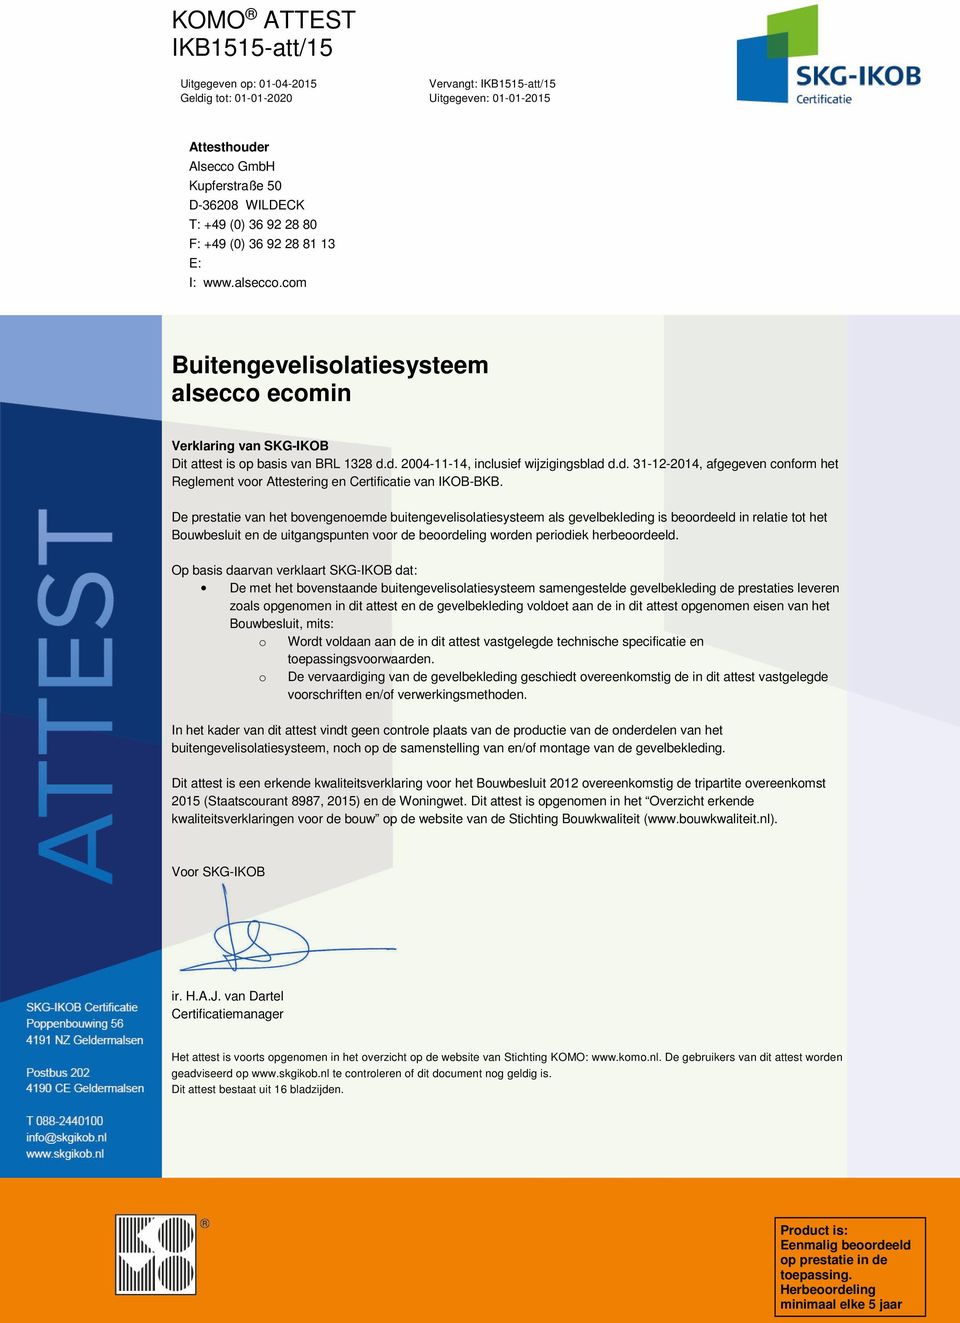 d. 2004-11-14, inclusief wijzigingsblad d.d. 31-12-2014, afgegeven conform het Reglement voor Attestering en Certificatie van IKOB-BKB.